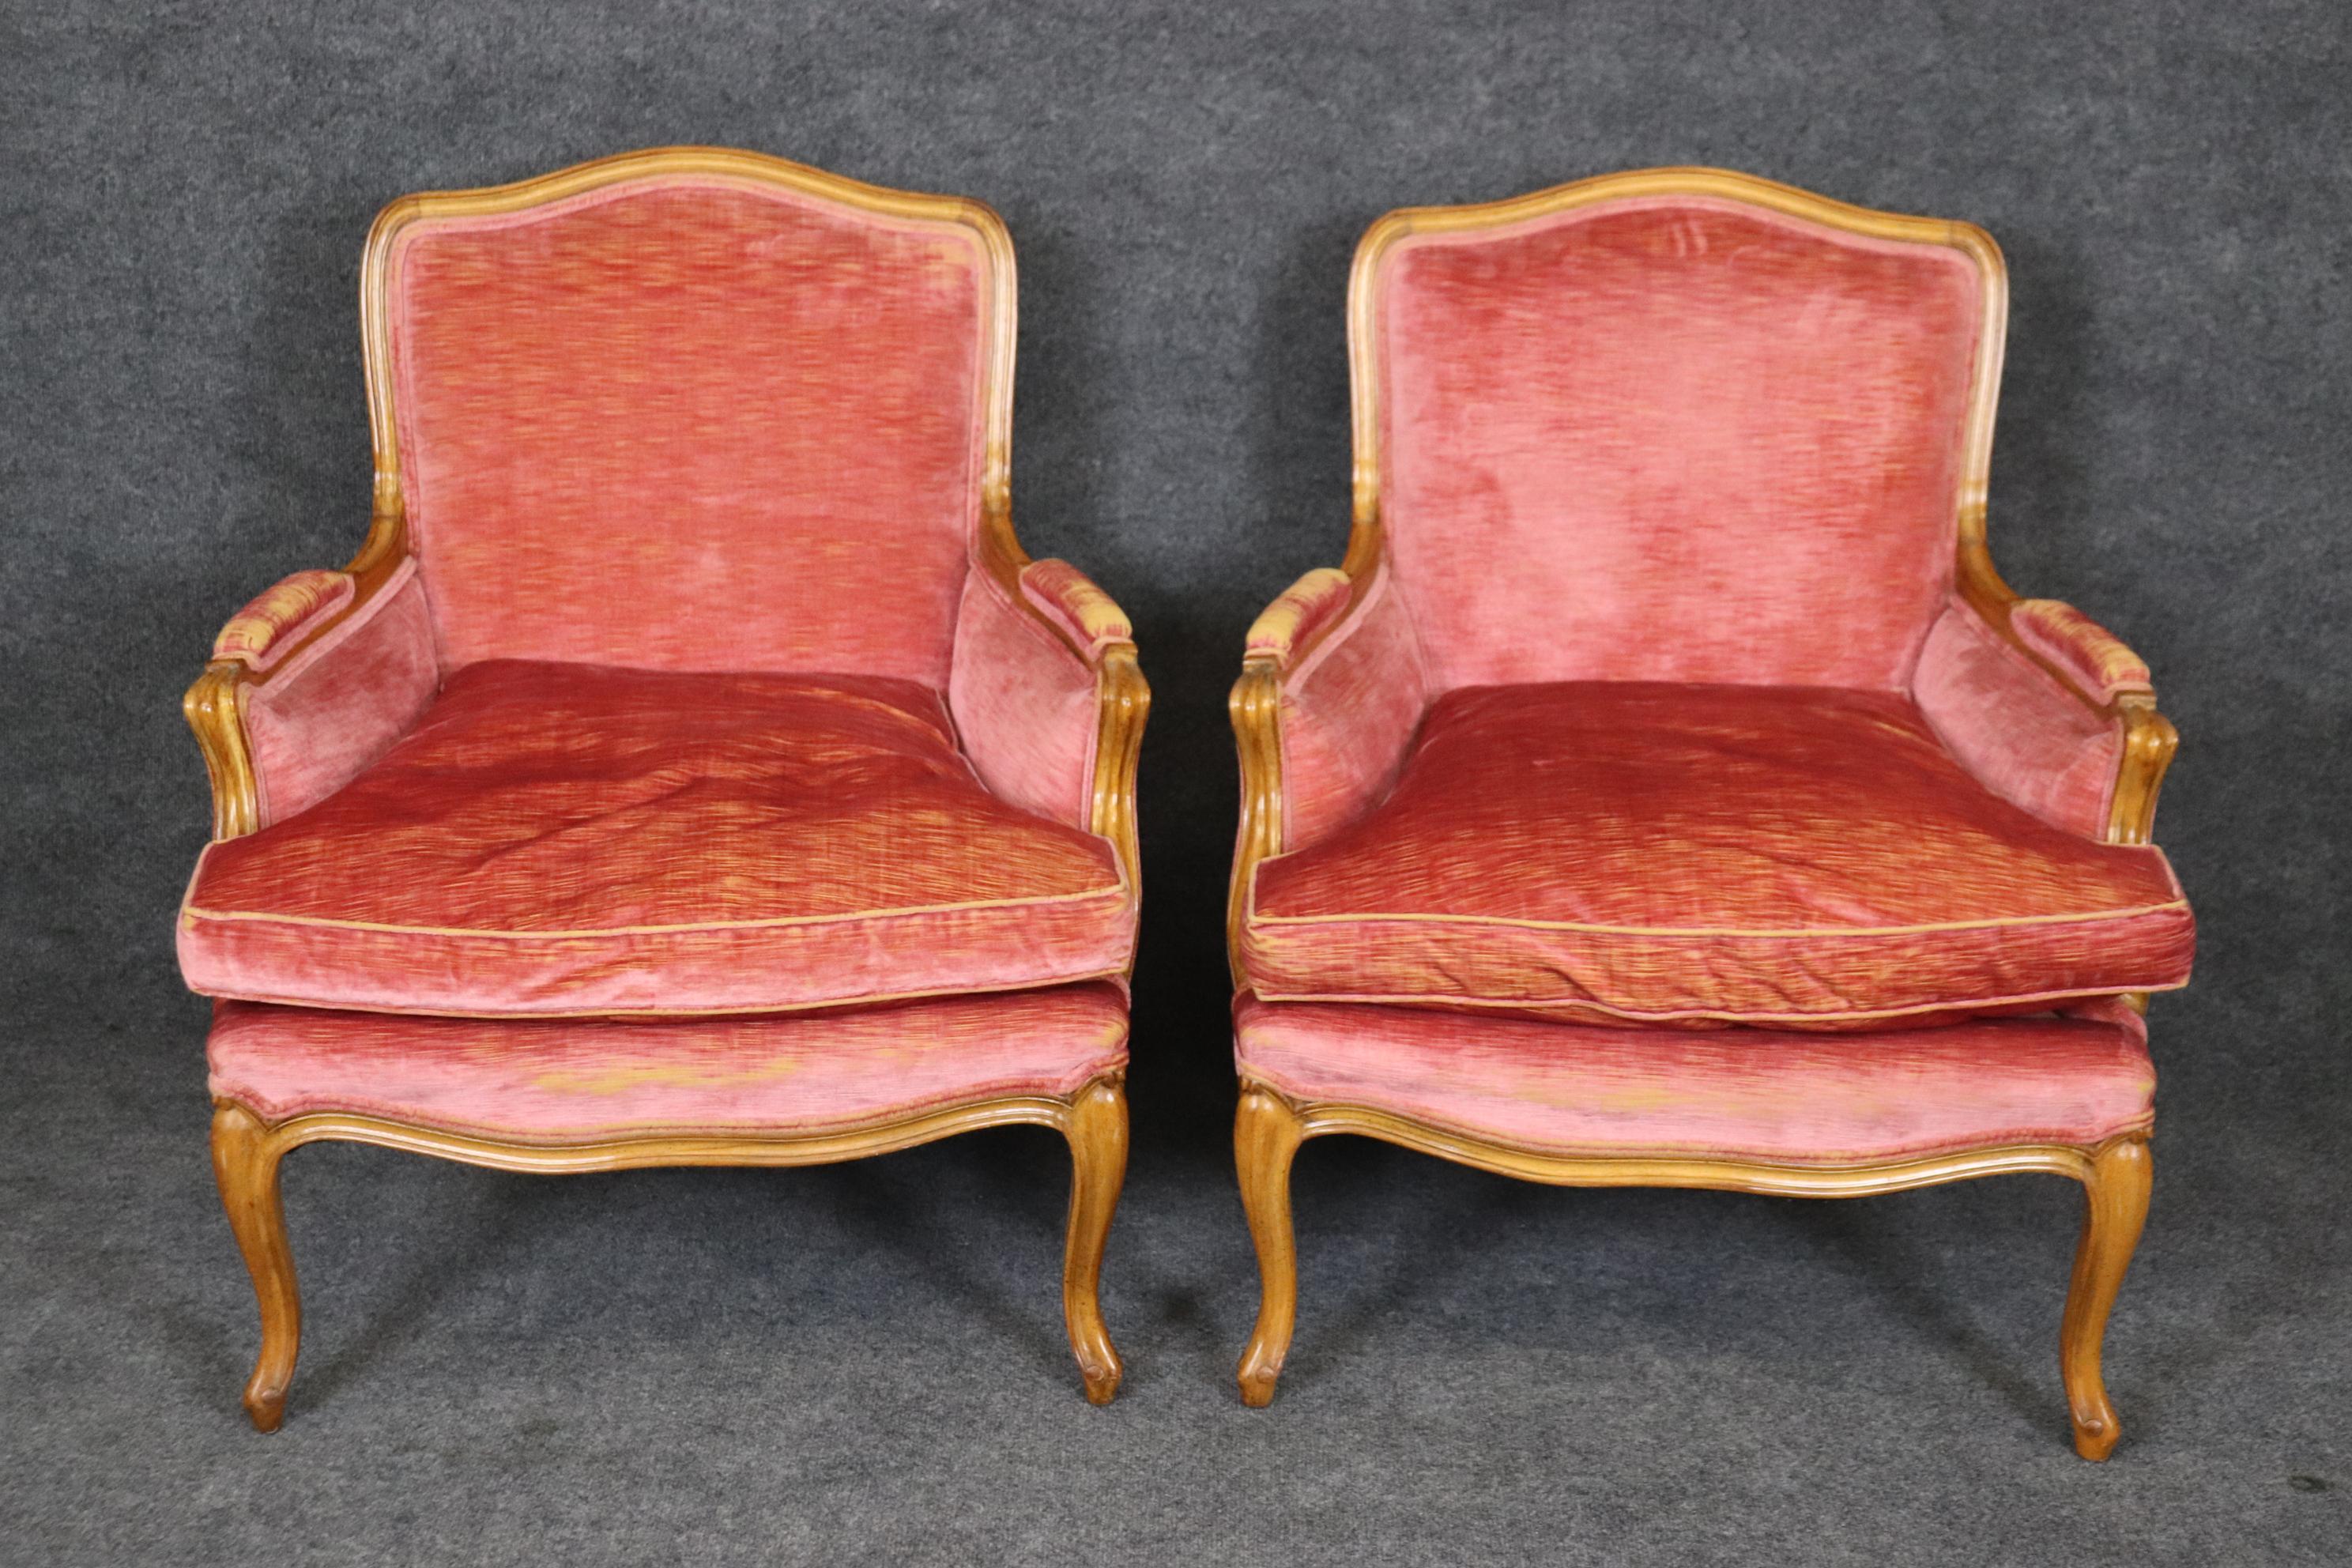 Il s'agit d'une magnifique paire de chaises bergères Louis XV en velours dans une teinte rose tendre. Les chaises sont dans leur revêtement d'origine et présentent une usure mineure au niveau des accoudoirs en particulier, ainsi qu'une usure et des